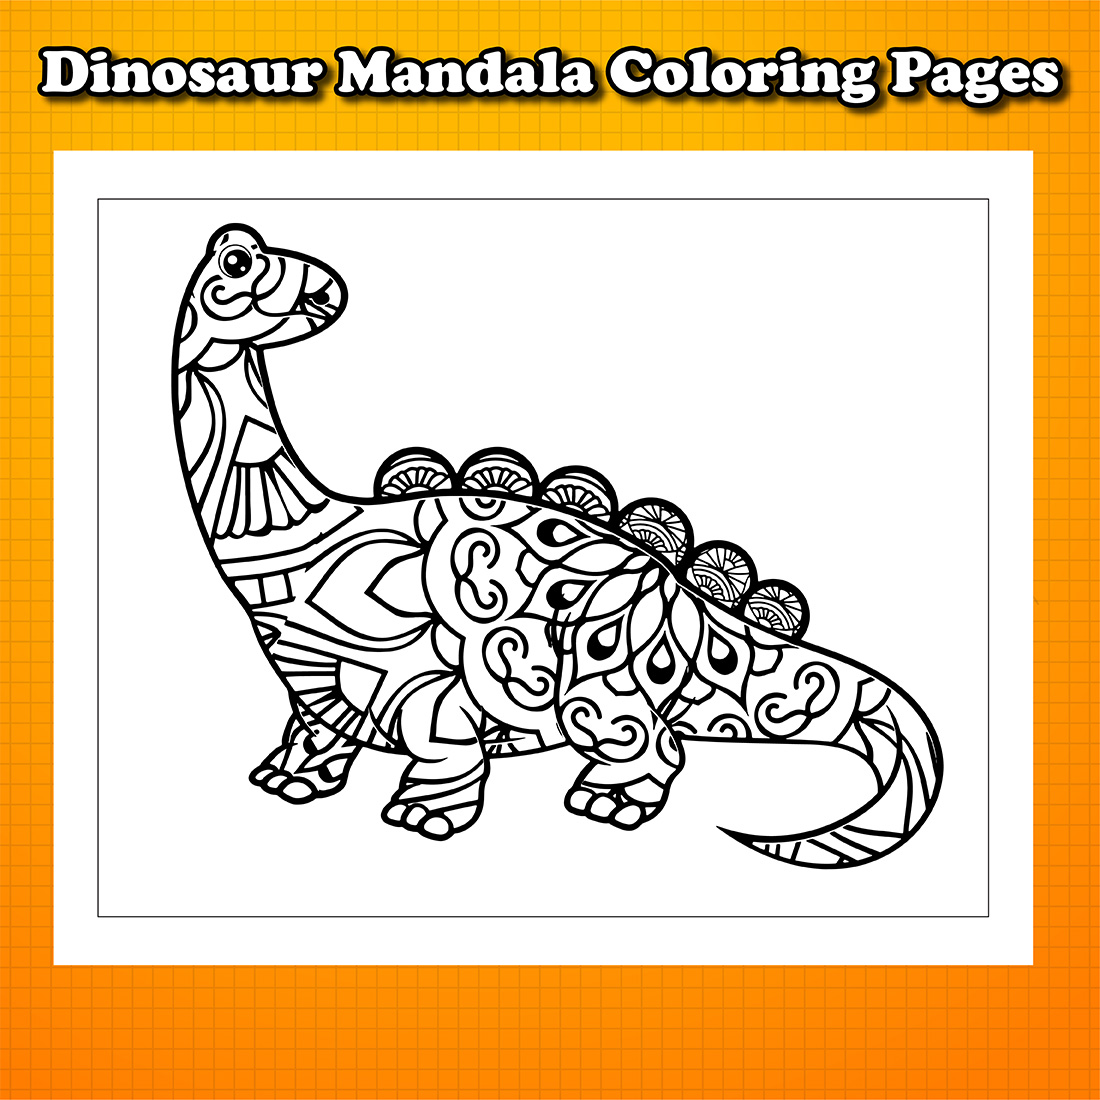 Dinosaur Mandala Coloring Pages